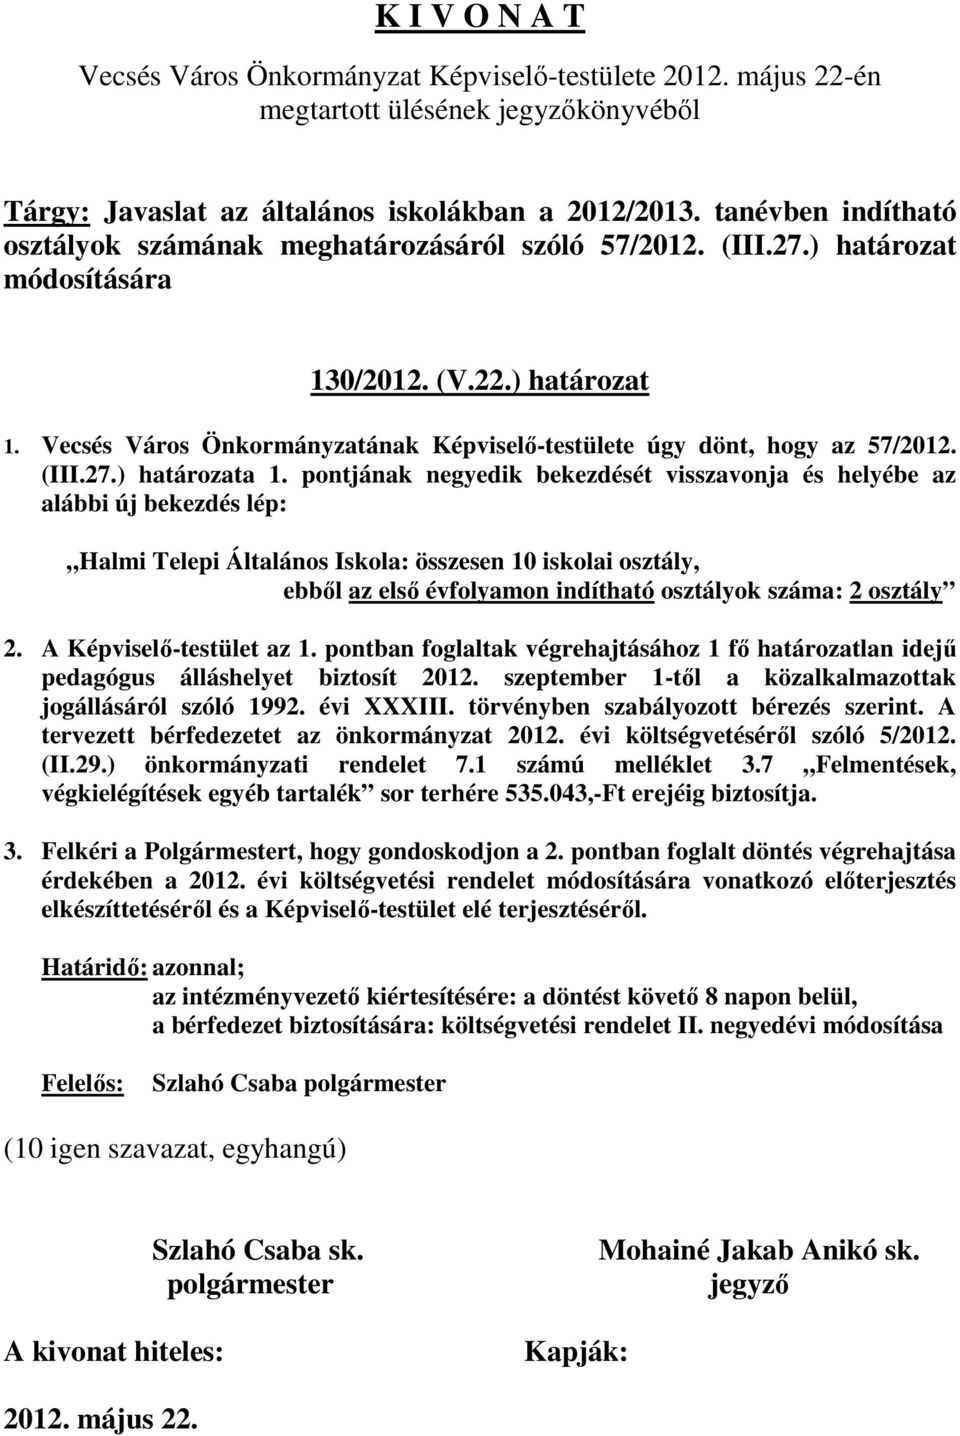 Vecsés Város Önkormányzatának Képviselı-testülete úgy dönt, hogy az 57/2012. (III.27.) határozata 1.